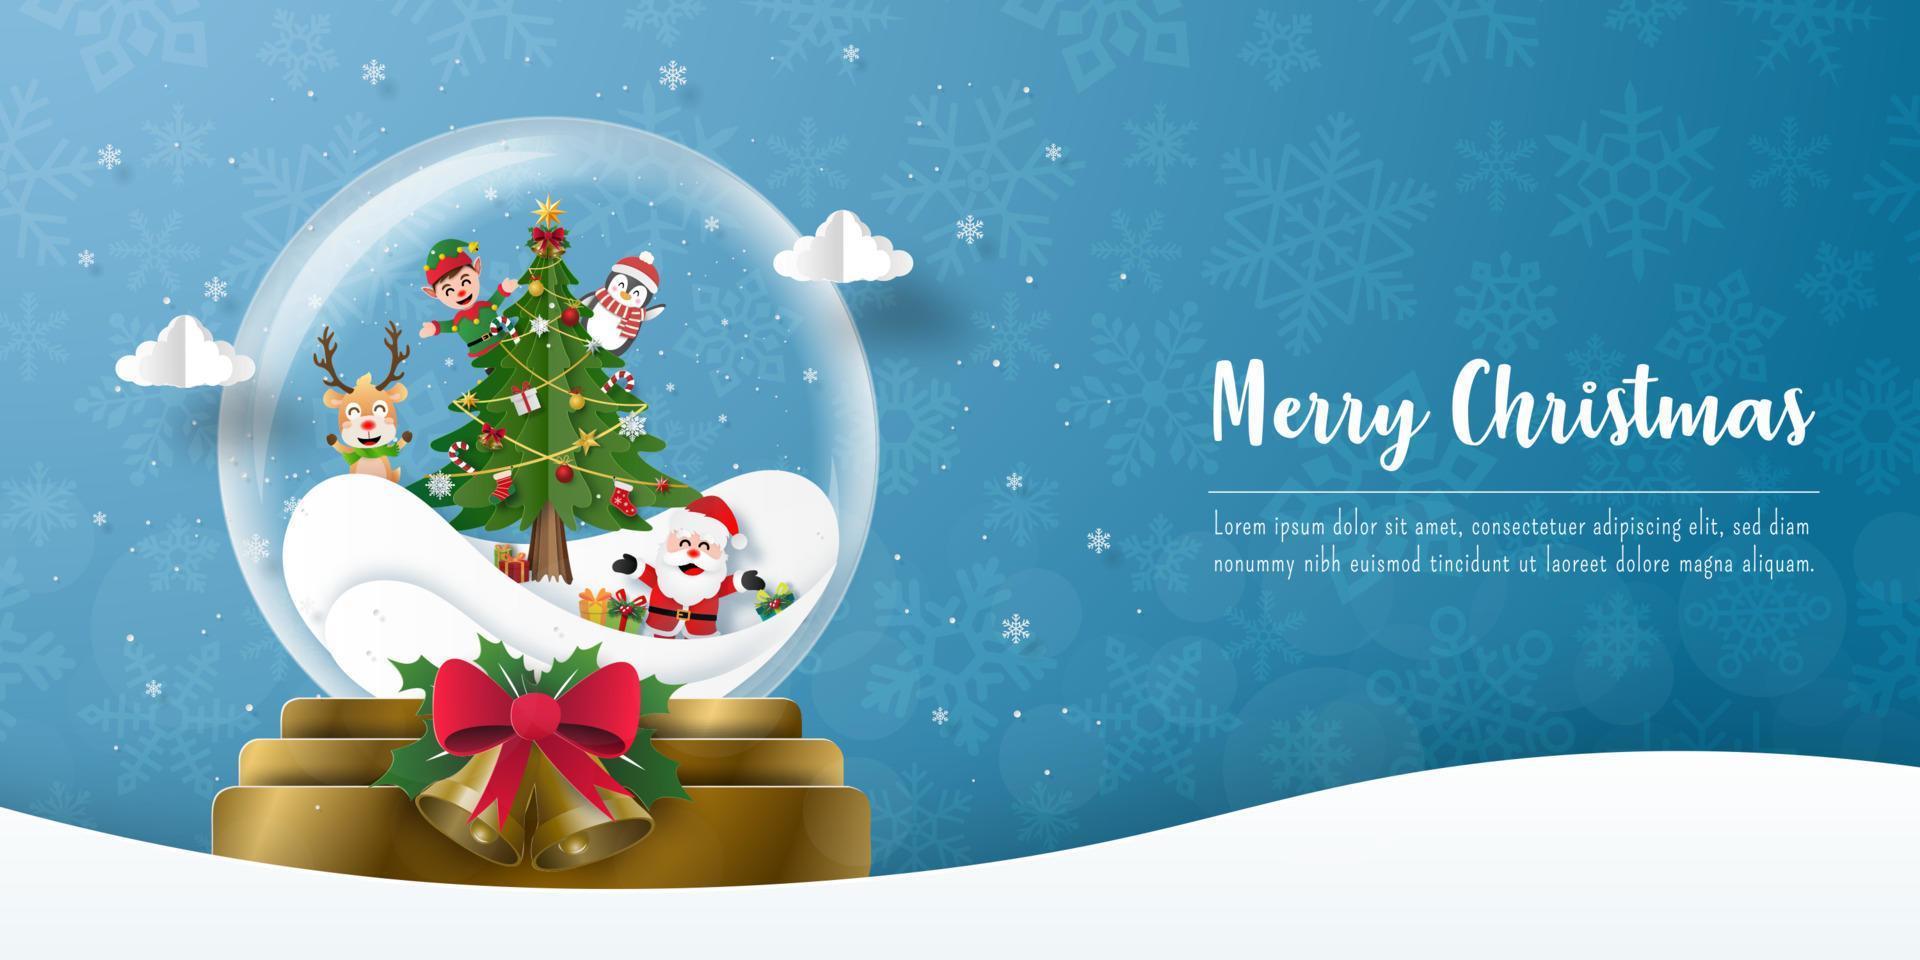 prettige kerstdagen en gelukkig nieuwjaar, kerstfeest met de kerstman in een kerstbal, bannerachtergrond vector